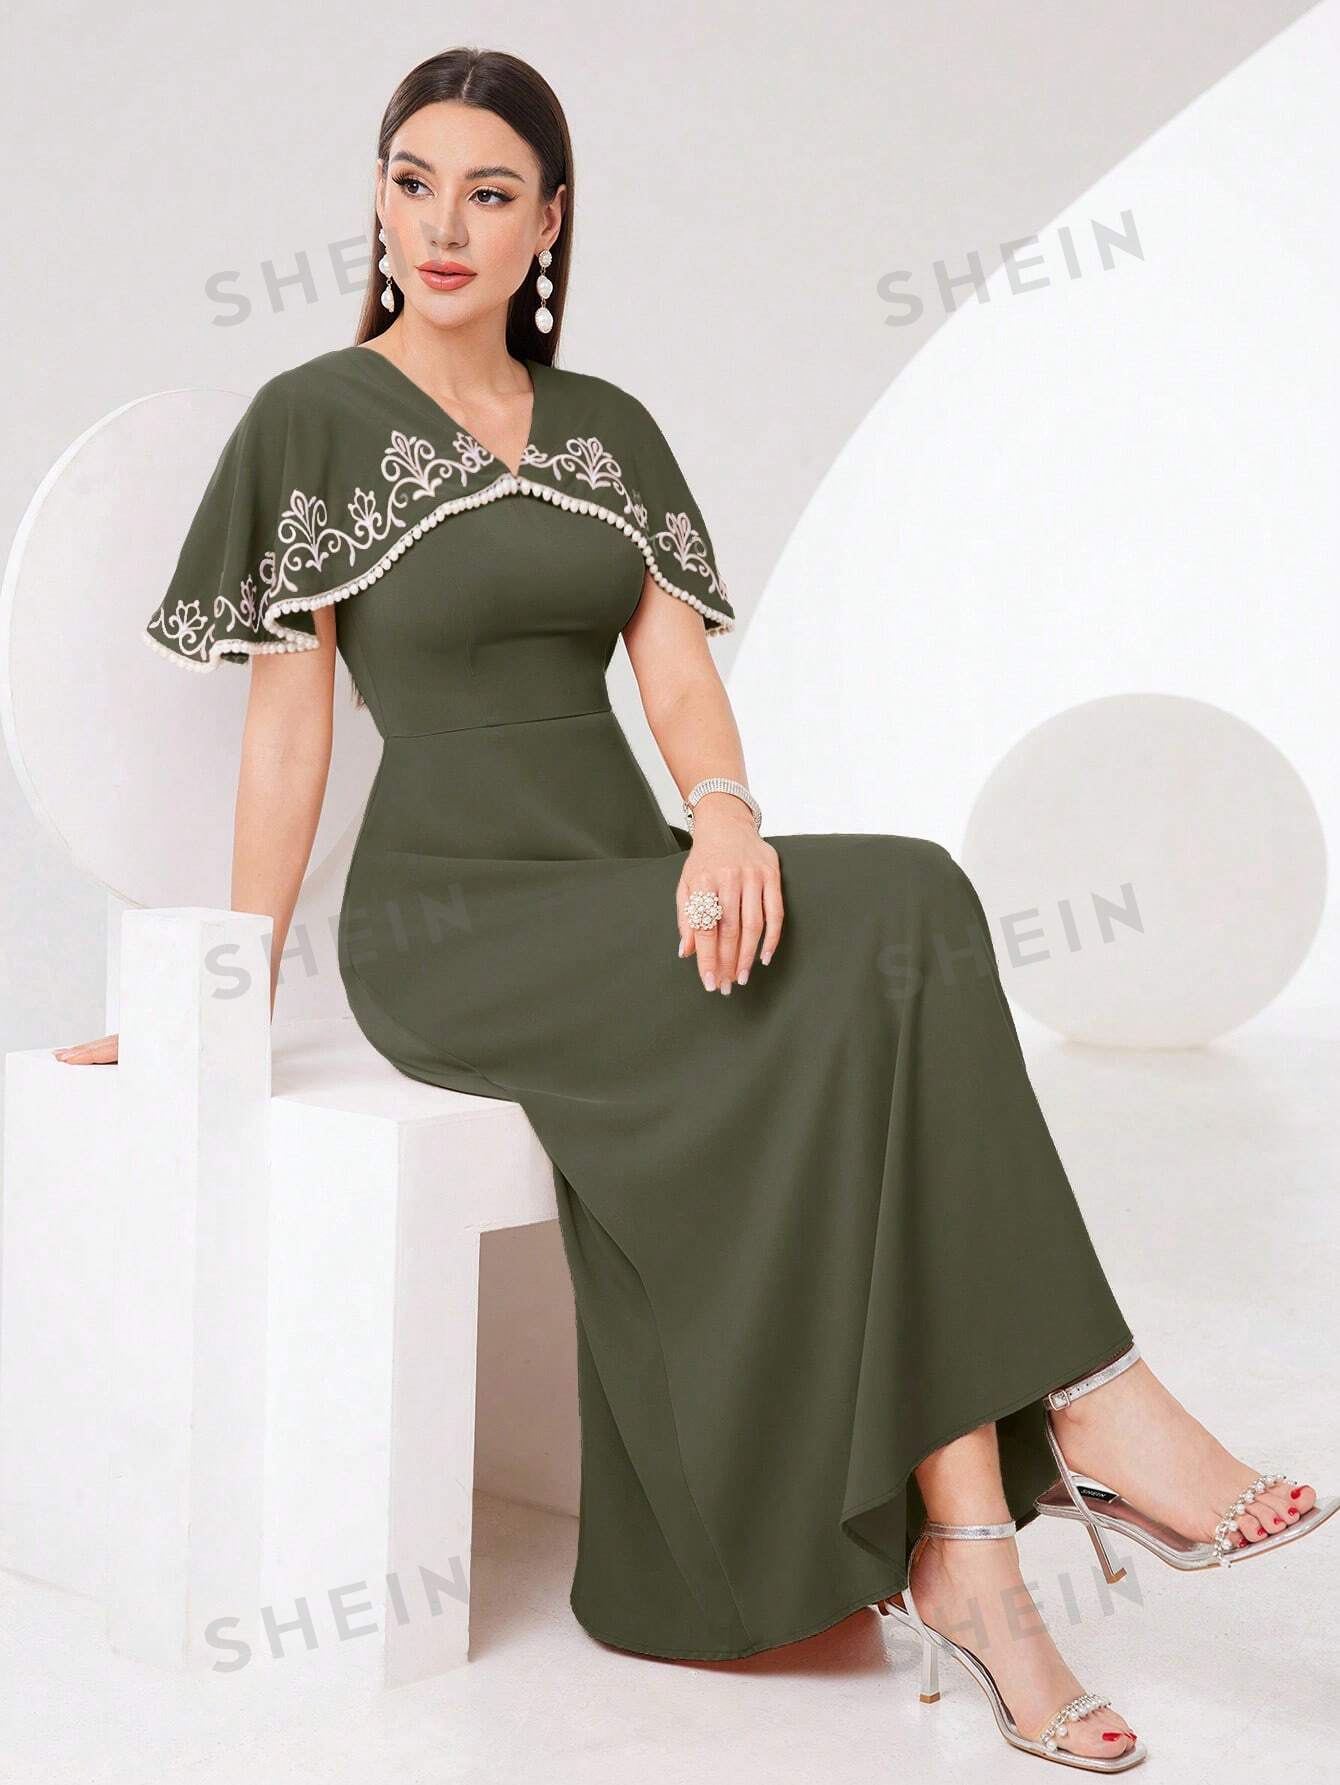 SHEIN Modely женское платье в арабском стиле с растительной вышивкой и шалевым воротником, оливково-зеленый